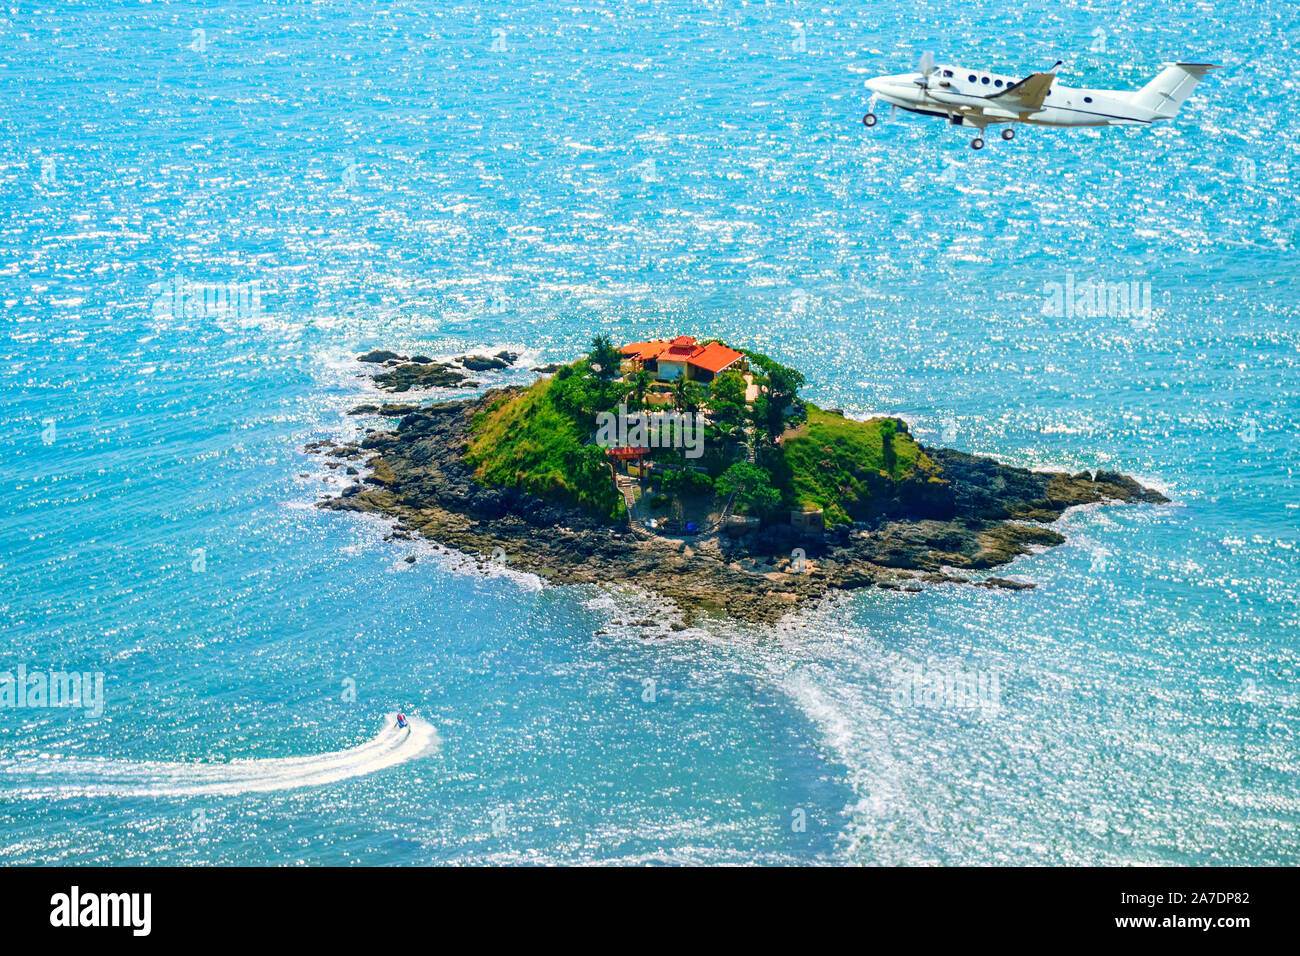 Oben auf einer kleinen Insel im Meer. Eine Private Jet fliegt in der Nähe und einen Jet ski schwimmt durch. Stockfoto